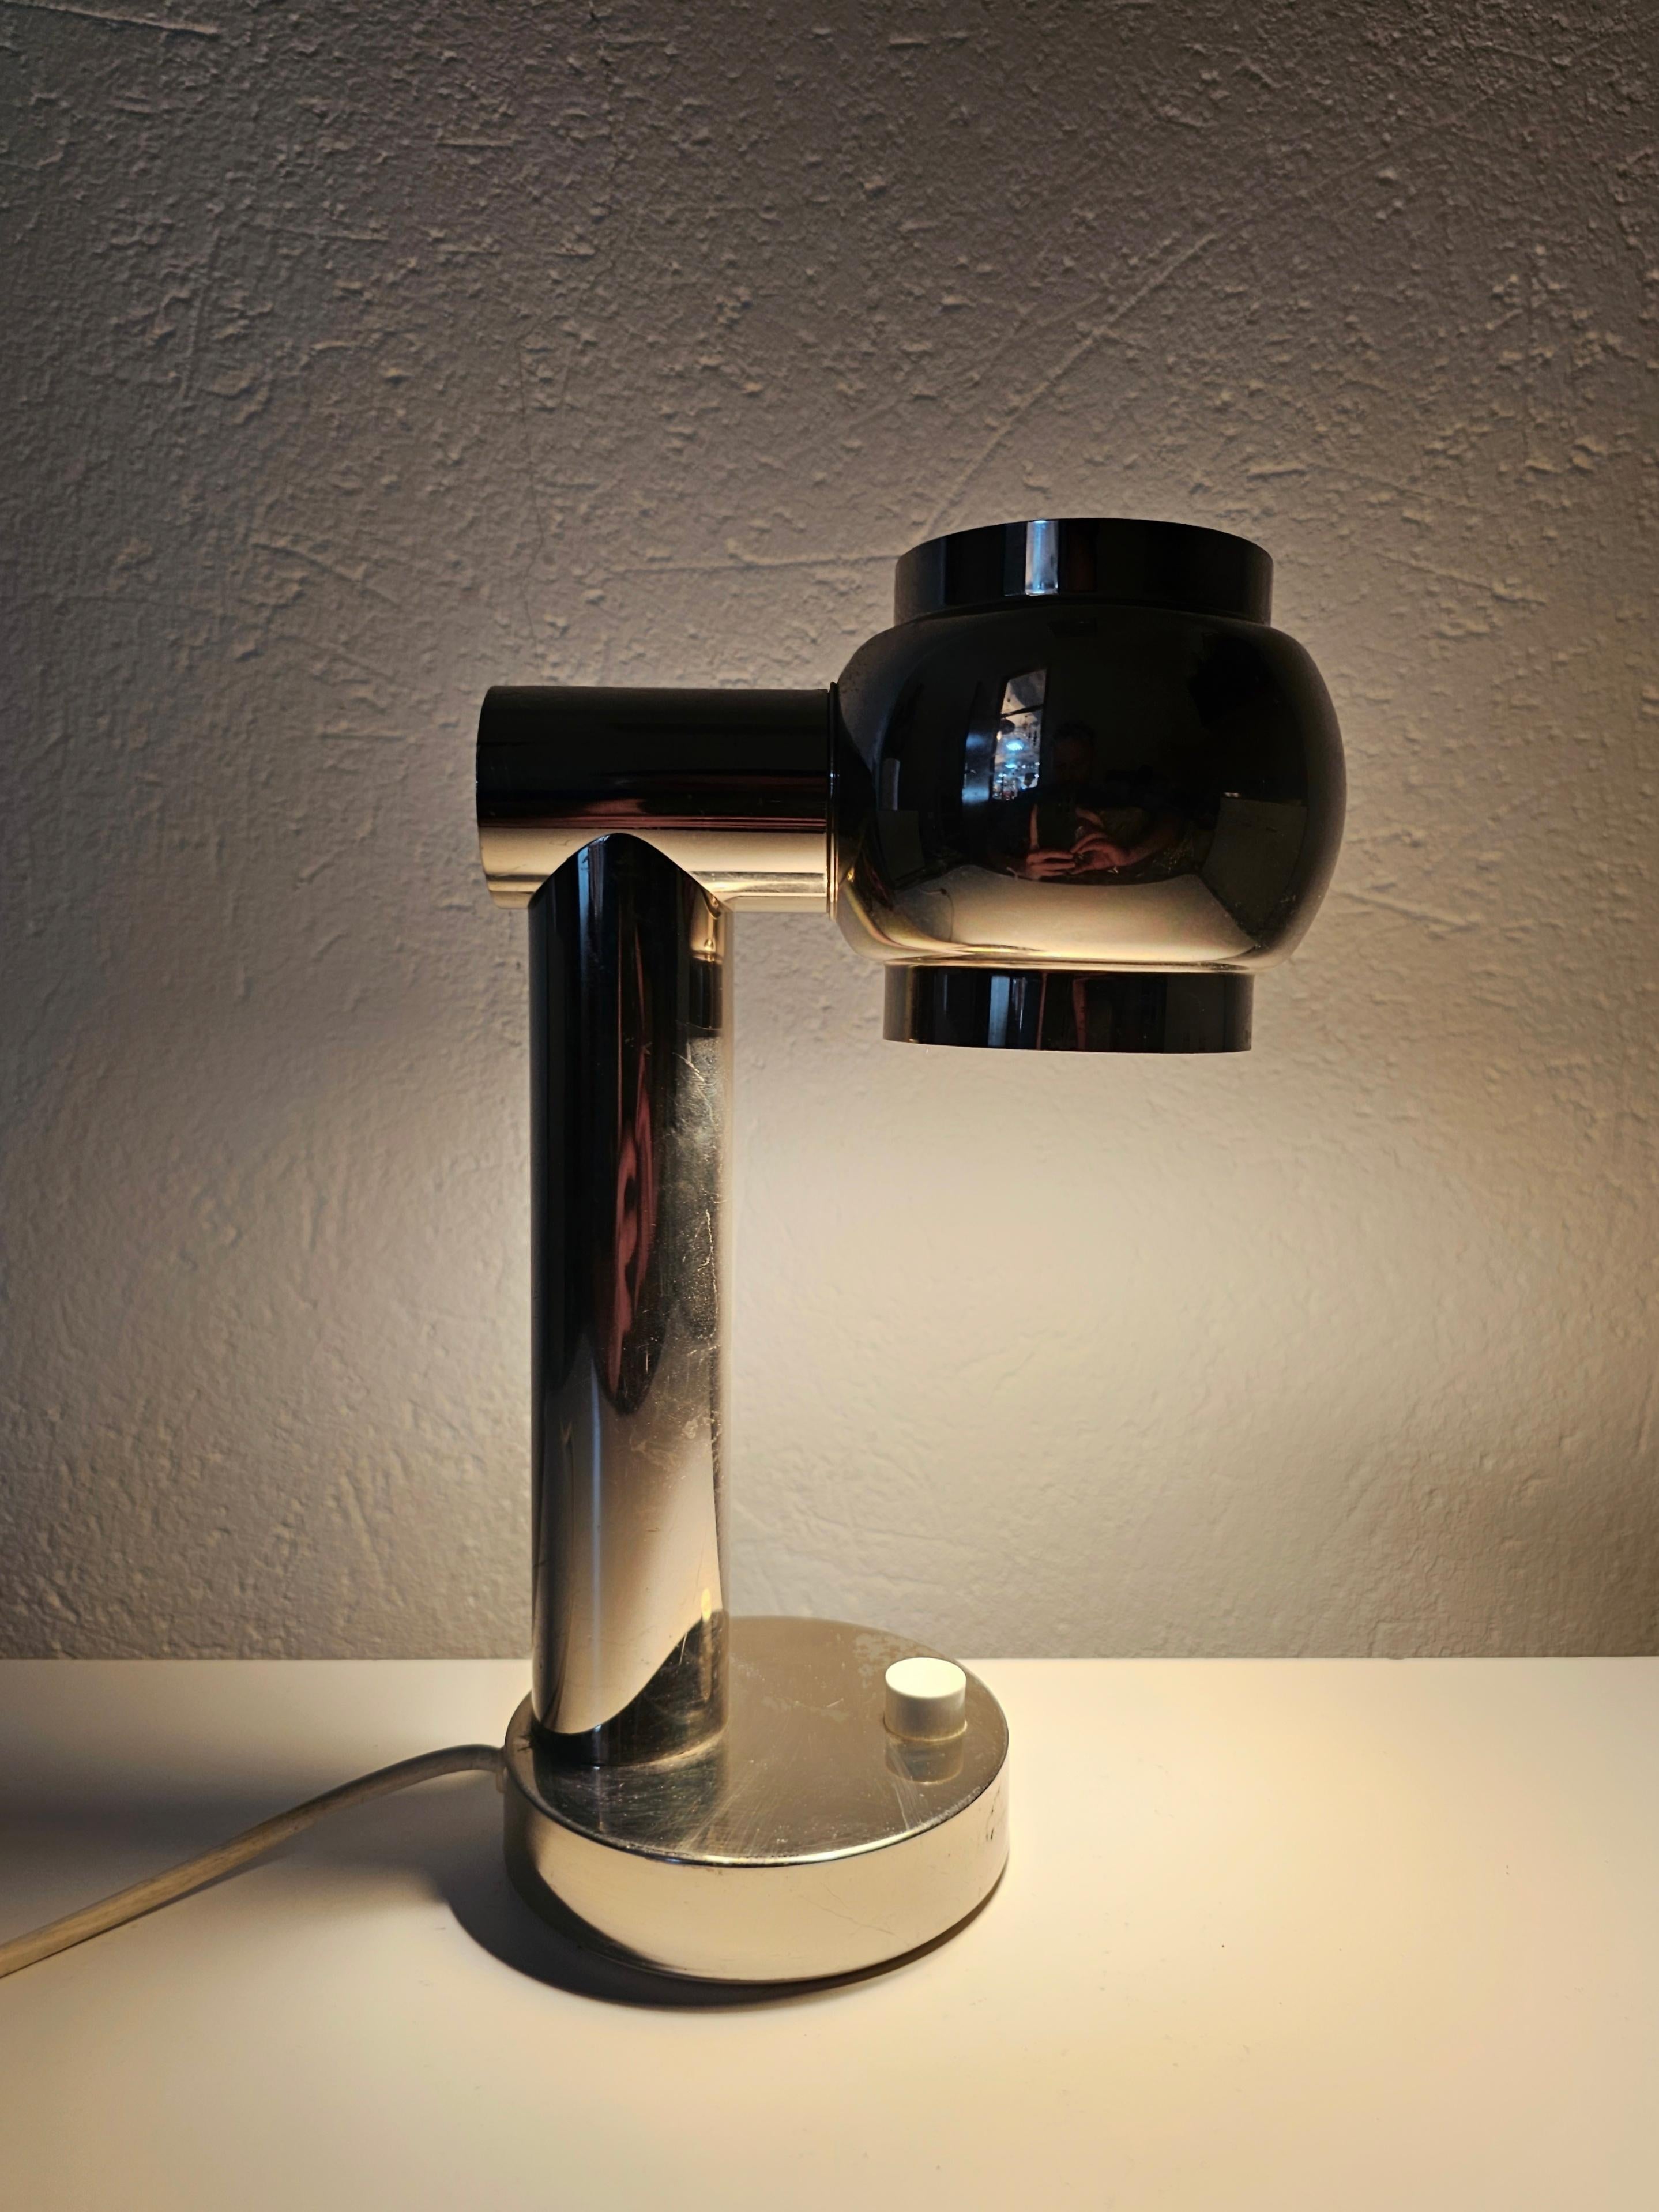 Dans cette annonce, vous trouverez une magnifique petite lampe de table de la NO AGE entièrement chromée. Elle présente une forme tubulaire avec une tête rotative qui permet de diriger la lumière dans n'importe quelle direction. Fabriqué en Italie